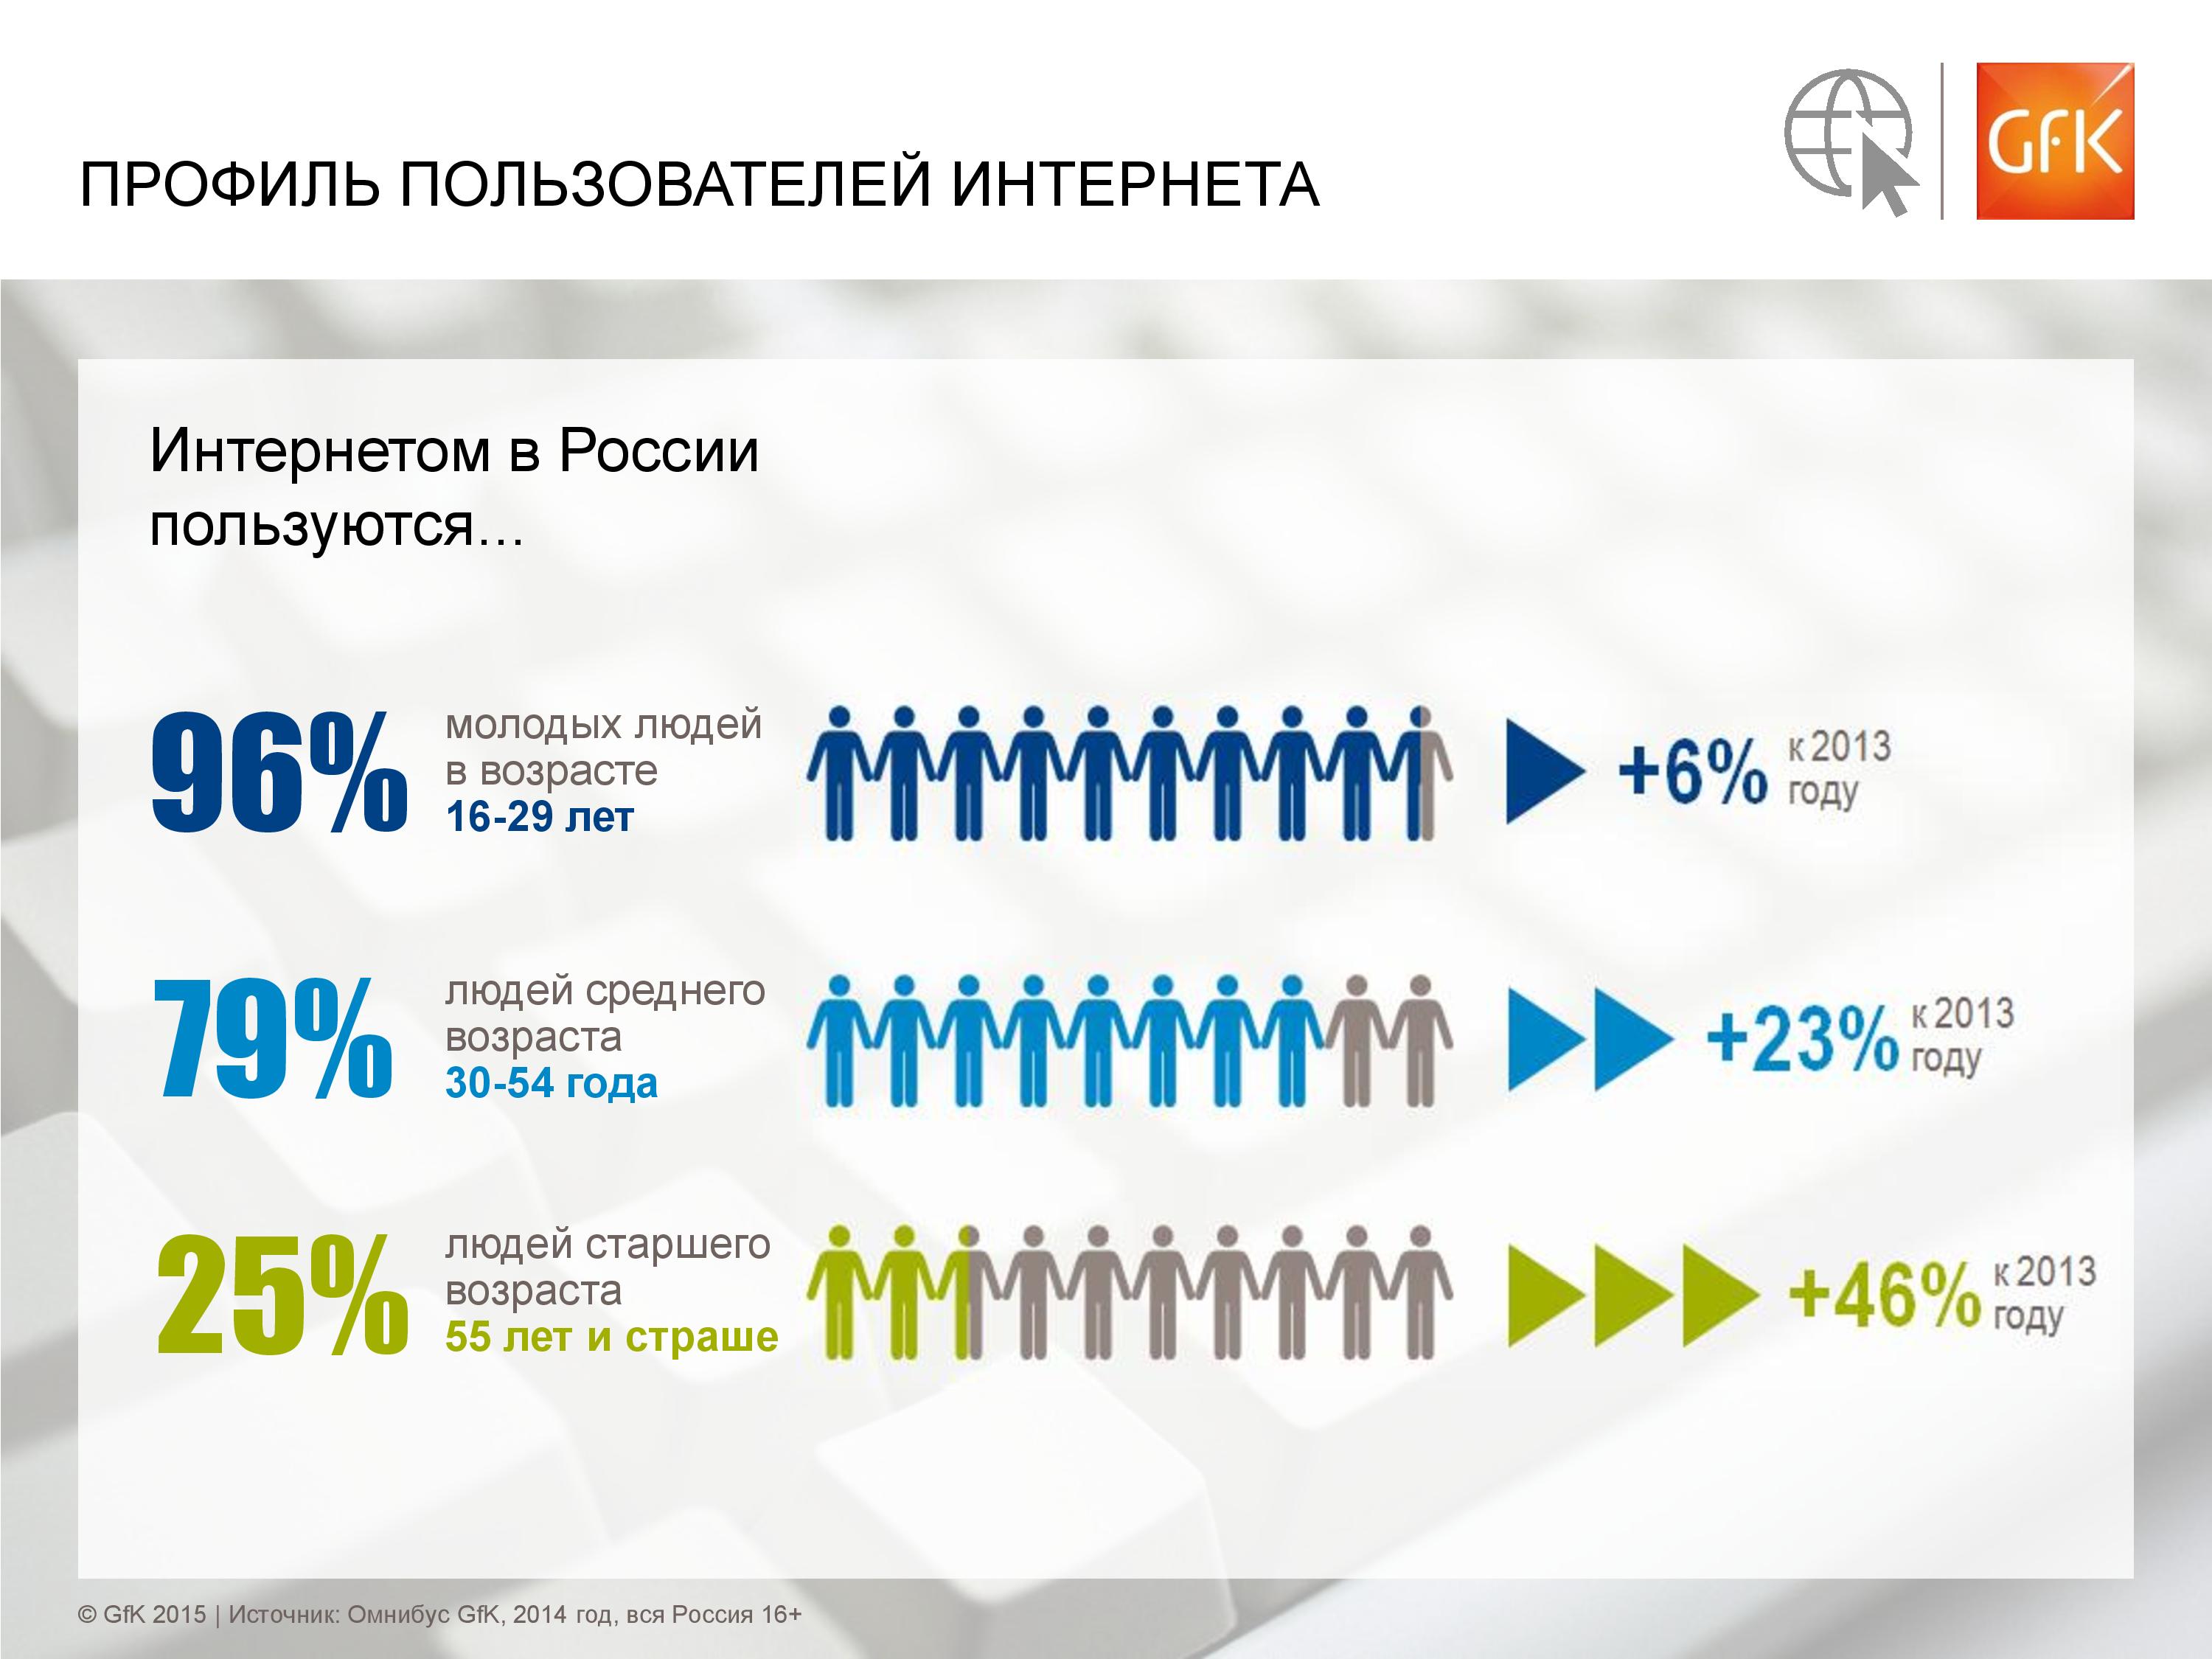 Комиссия из скольки человек. Статистика пользователей интернета. Интернетом в России пользуются. Сколько людей пользуются интернетом. Статистика людей сидящих в интернете.